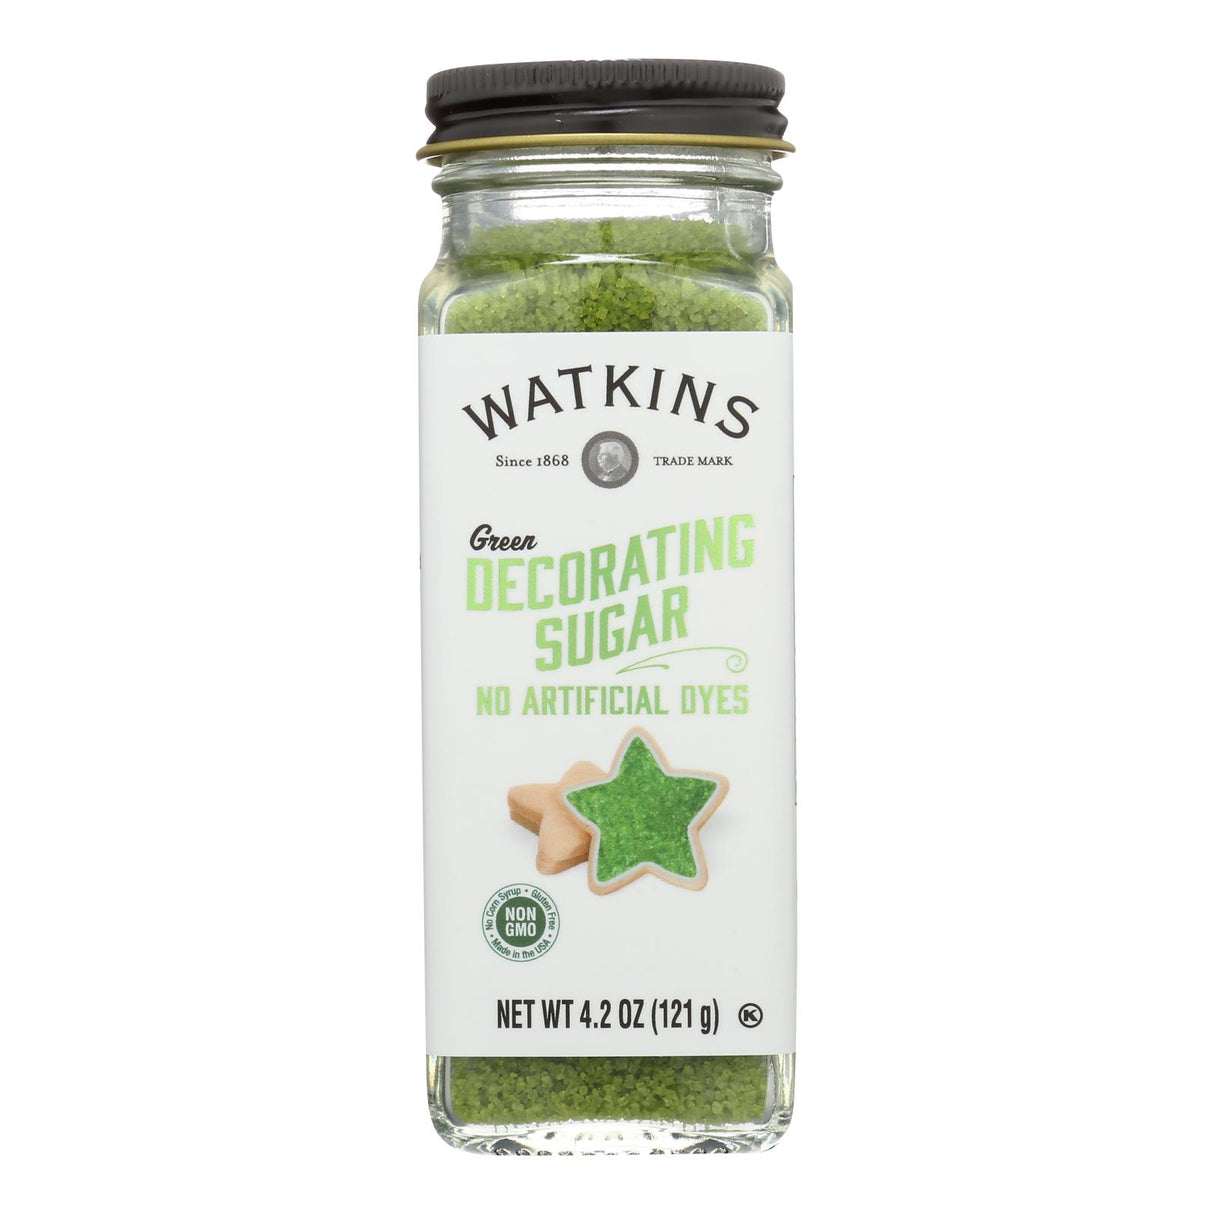 Watkins Green Decorating Sugar (3-Pack, 4.2 Oz. Each) - Cozy Farm 